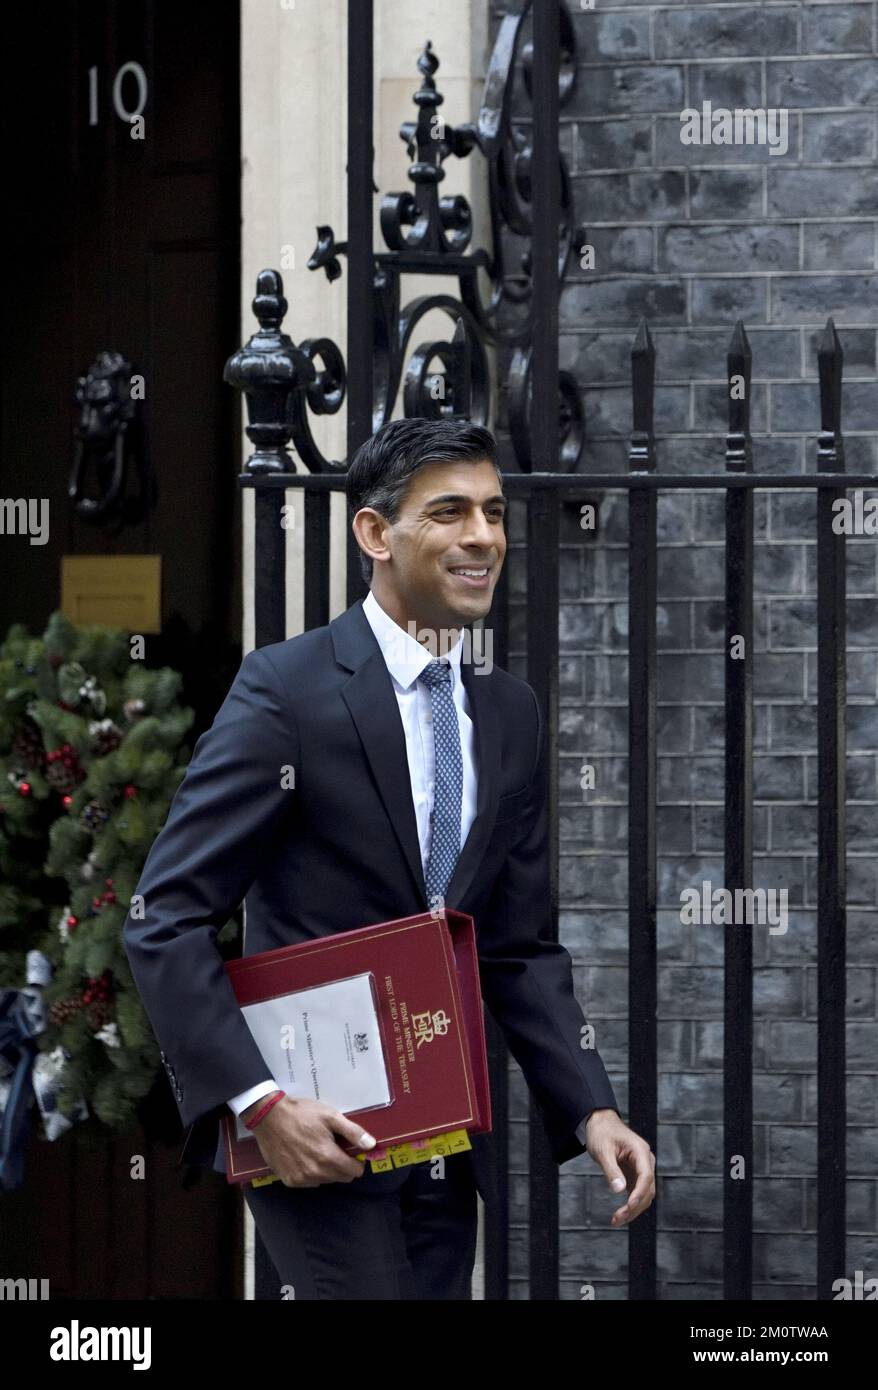 Rishi Sunak MP - Premier ministre britannique - départ du 10 Downing Street avec un dossier préparé pour les questions du Premier ministre au Parlement. Décembre 2022 Banque D'Images